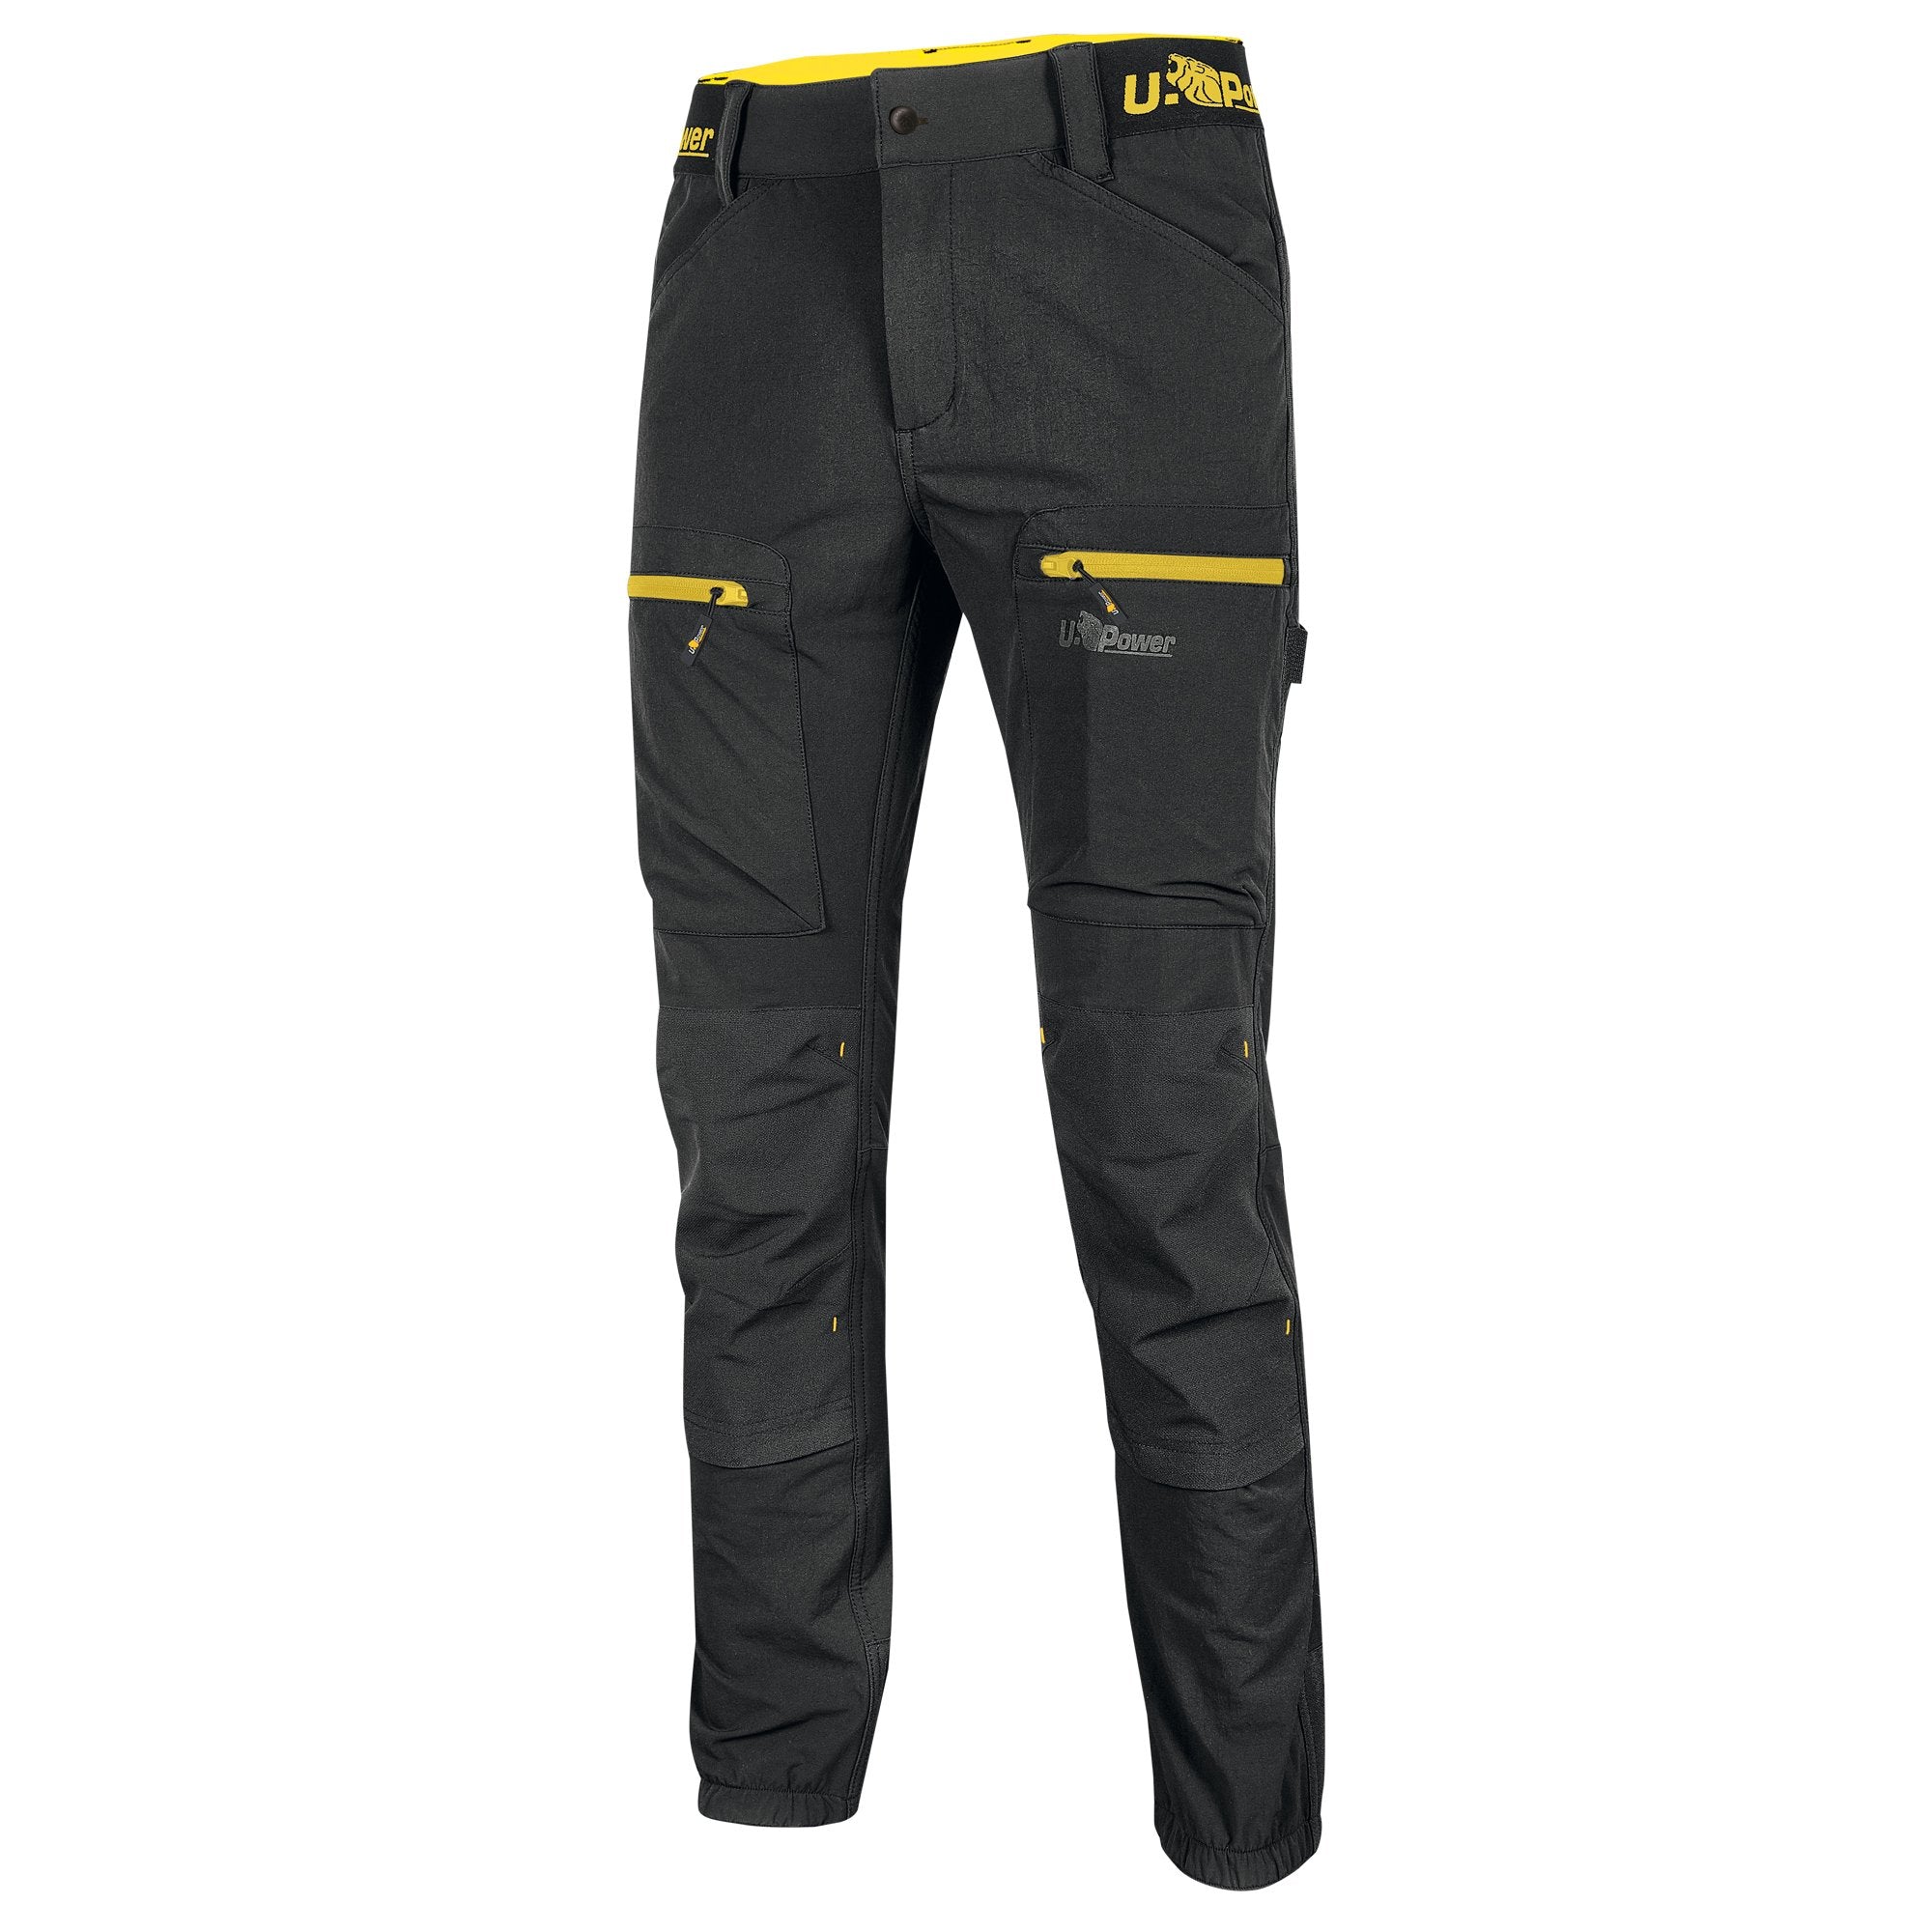 u-power-pantalone-horizon-tg-xxl-nero-giallo